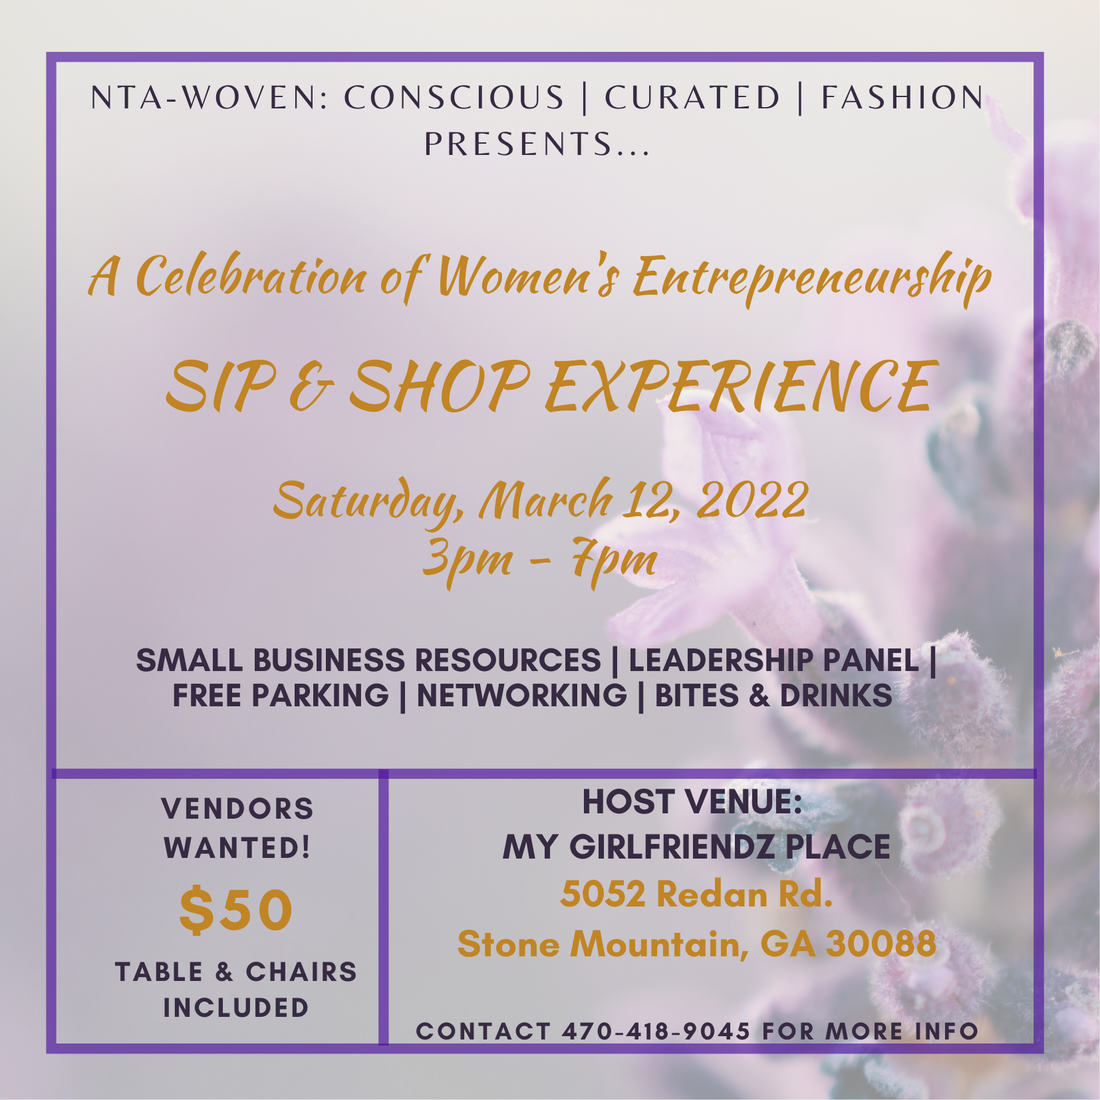 Nta-woven Presents: A Celebration of Women's Entrepreneurship Sip & Shop Experience